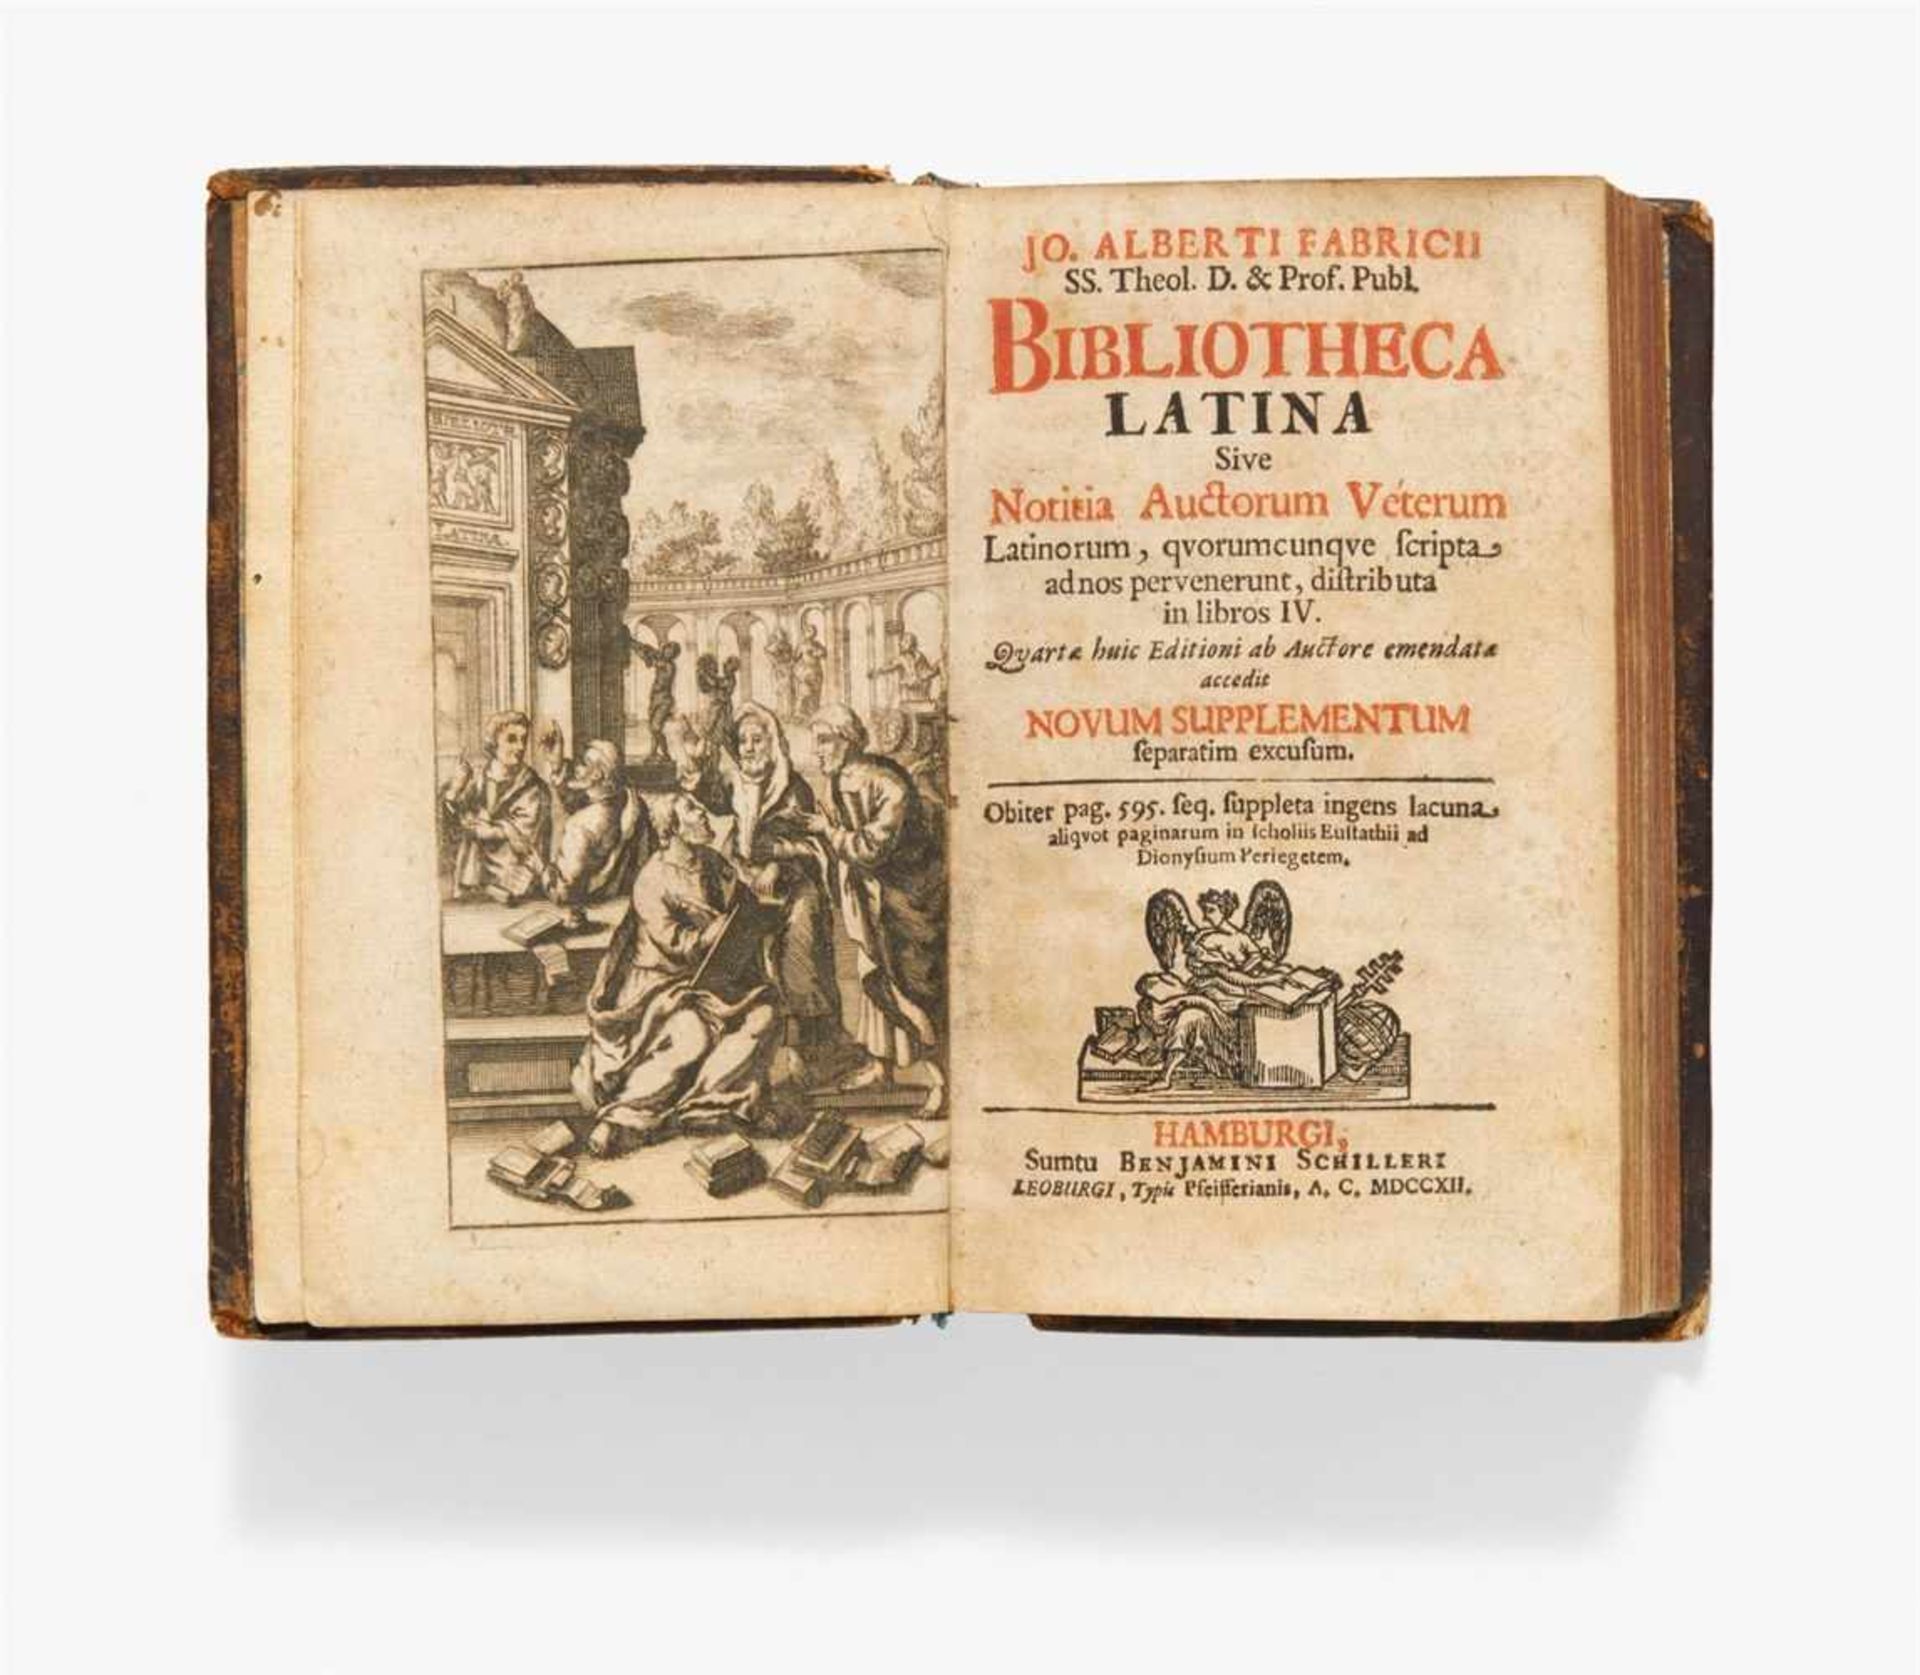 Fabricius, Johann Albert: Bibliotheca latina sive notitia auctorum veterum latinorum, quorumcunque